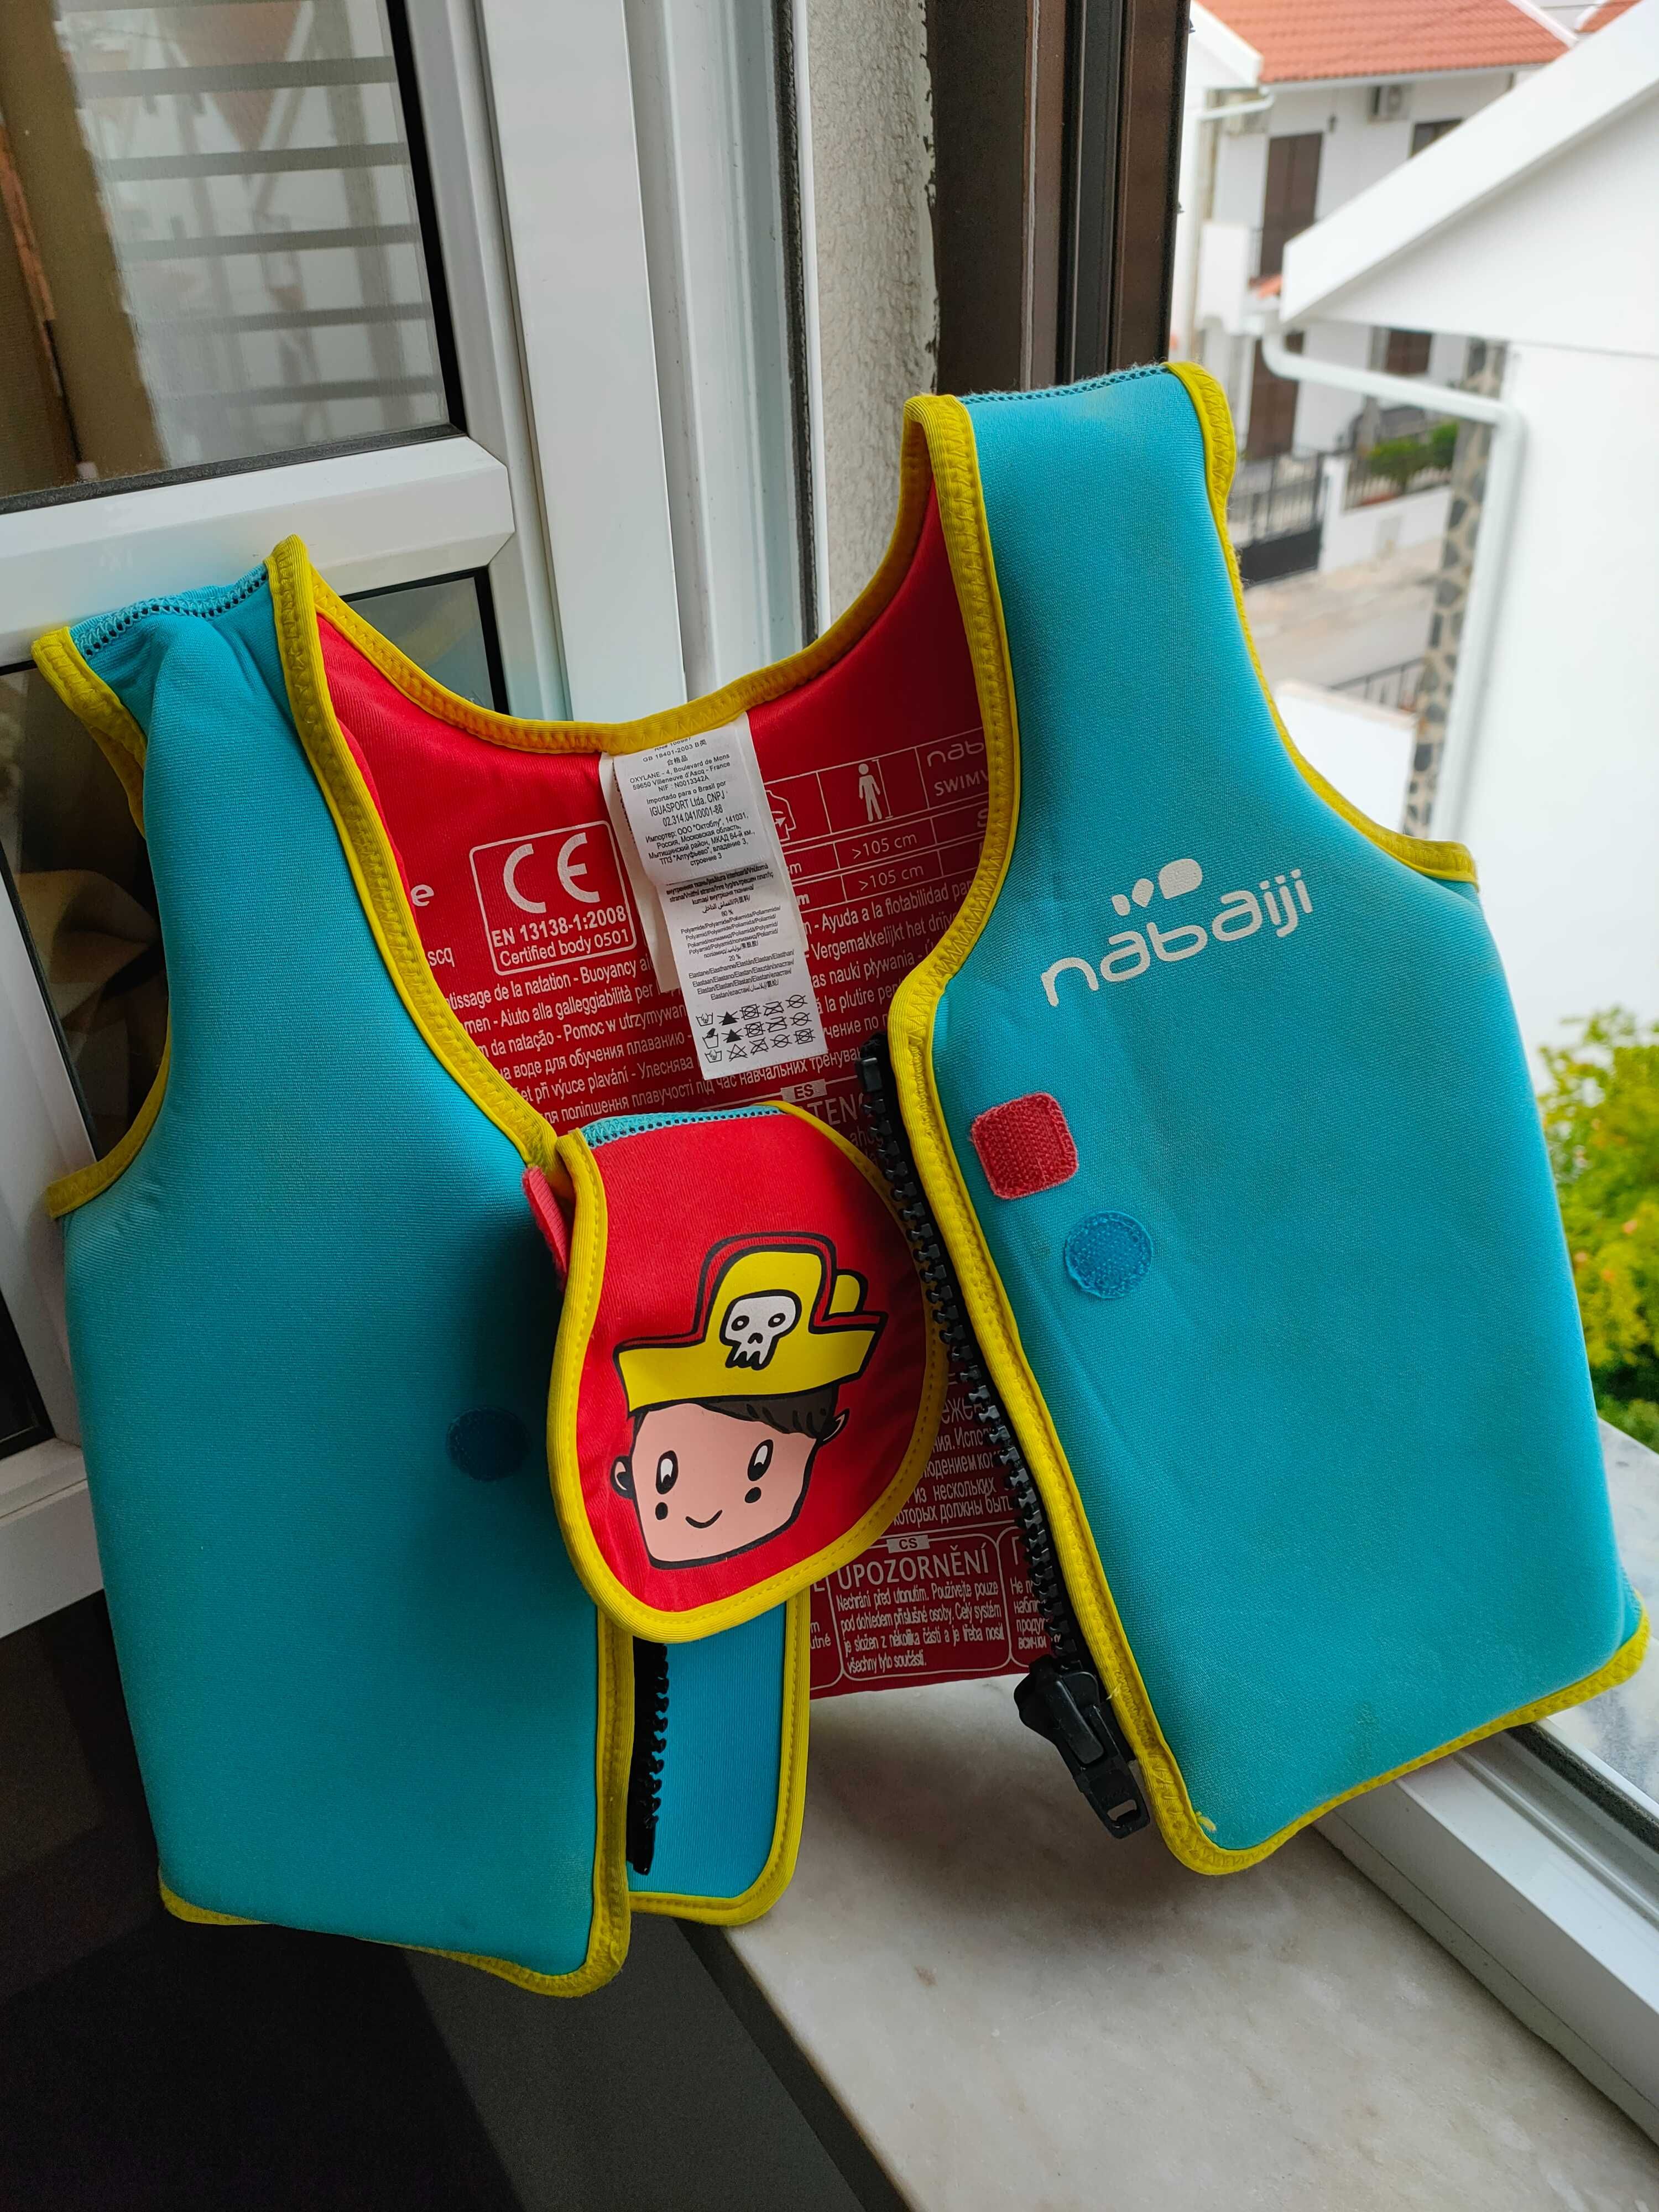 Colete para criança de 4 anos Usado em boas condições, para natação.